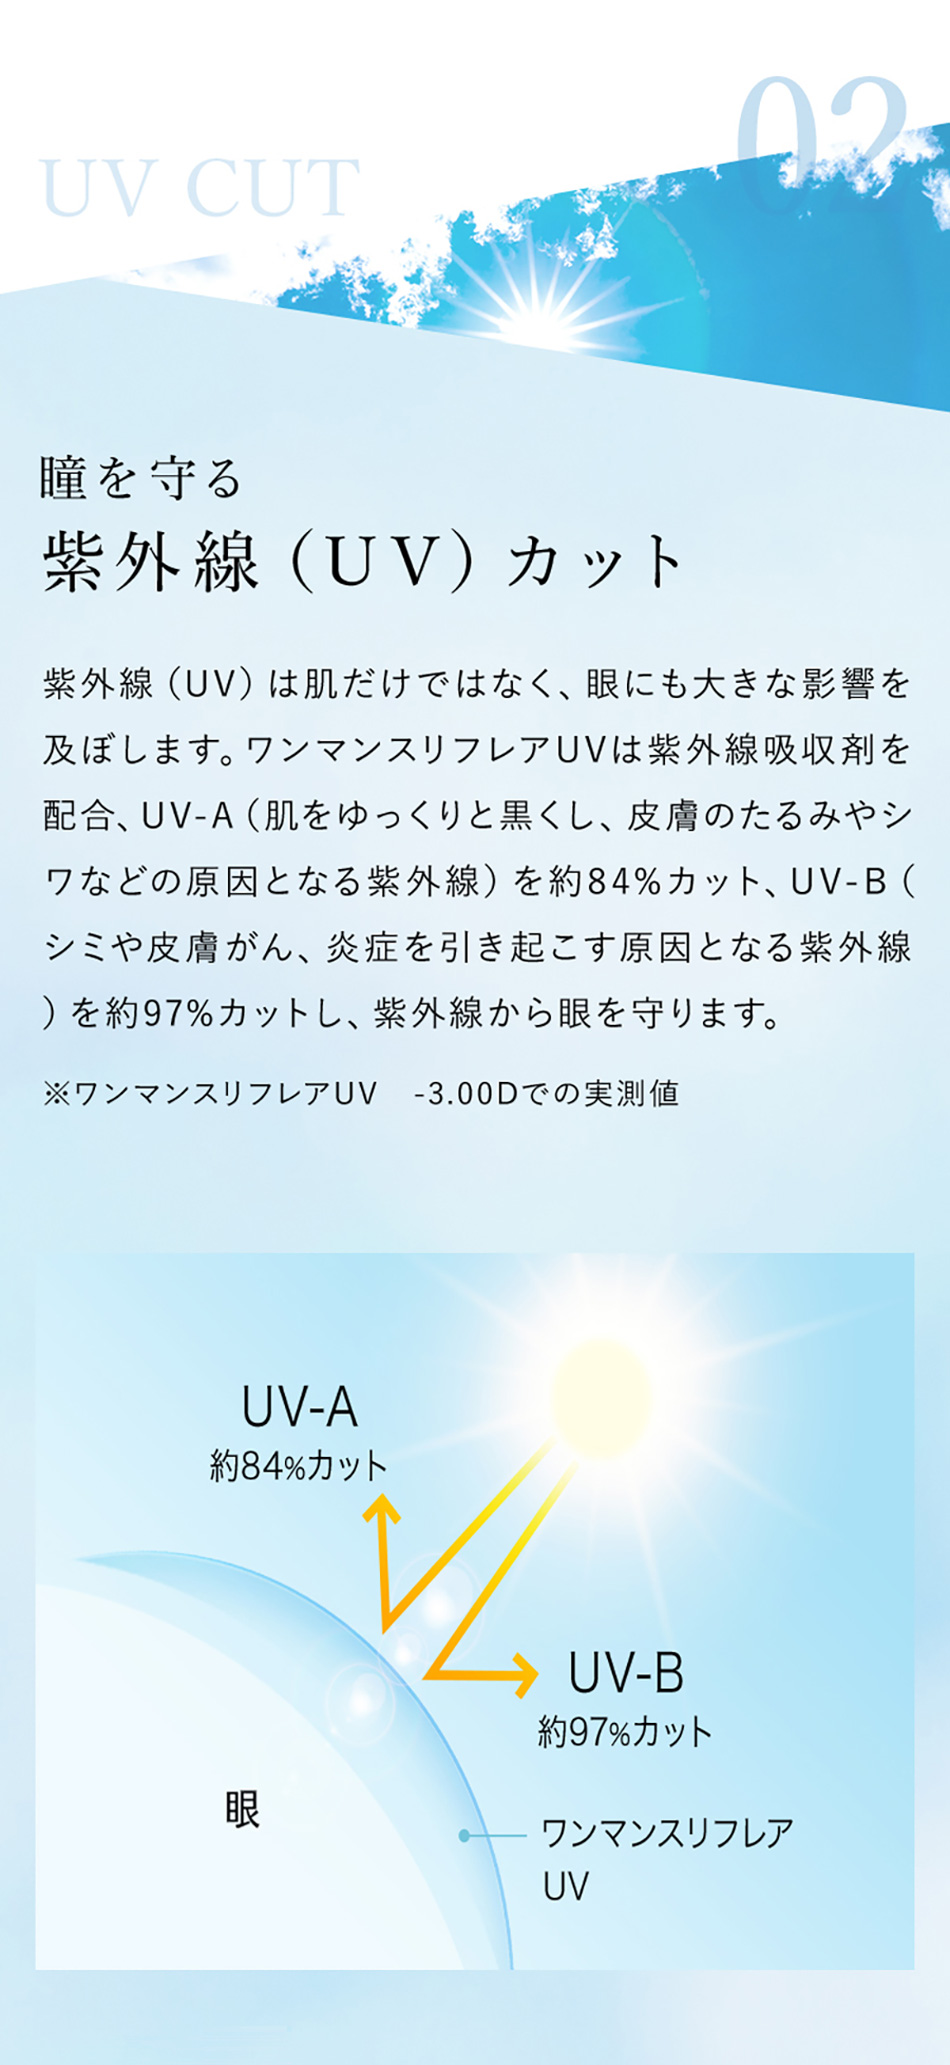 ワンマンスリフレアUV 02 UV CUT